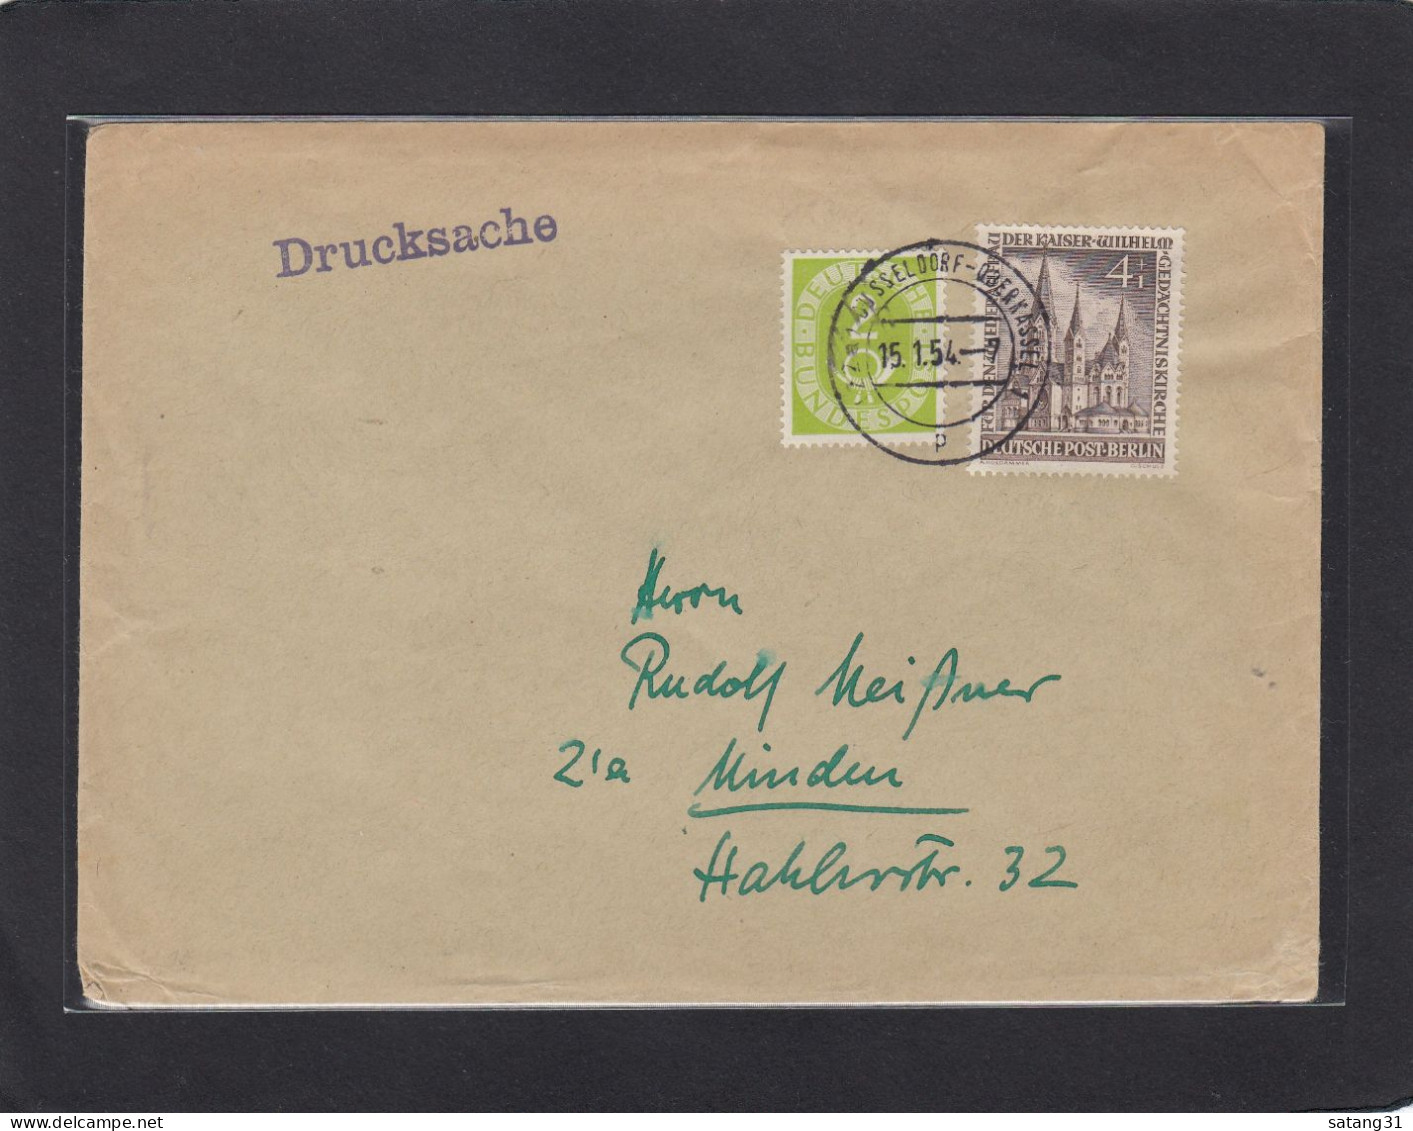 DRUCKSACHE AUS DÜSSELDORF - OBERKASSEL NACH MINDEN,1954. - Covers & Documents